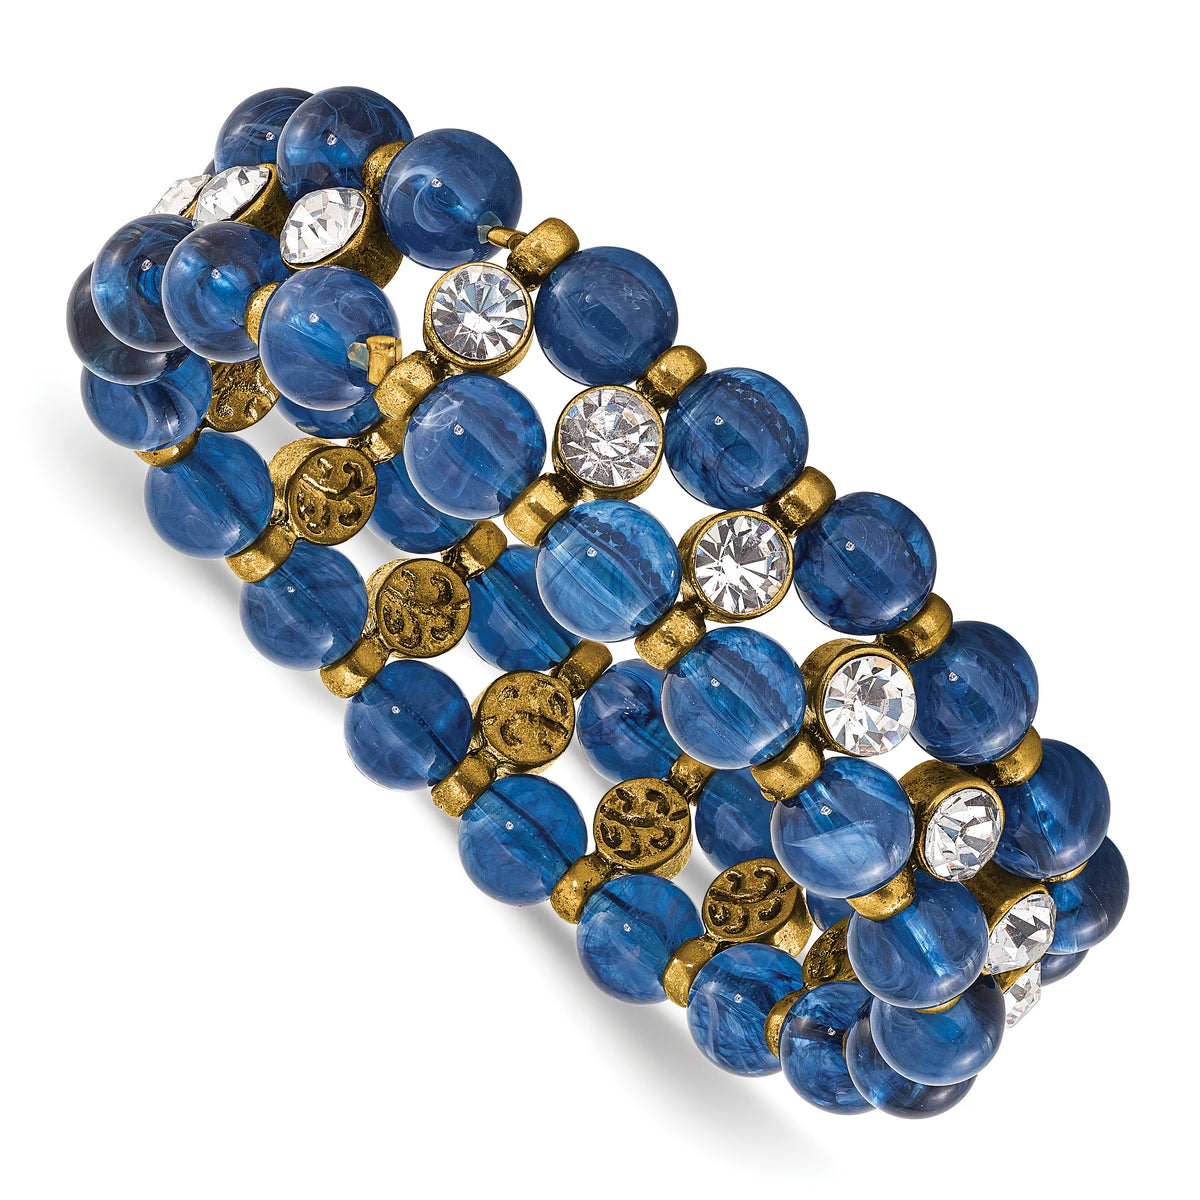 1928 Brass-tone Blue Acrylic Beads & Clear Glass Stones Stretch Bracelet